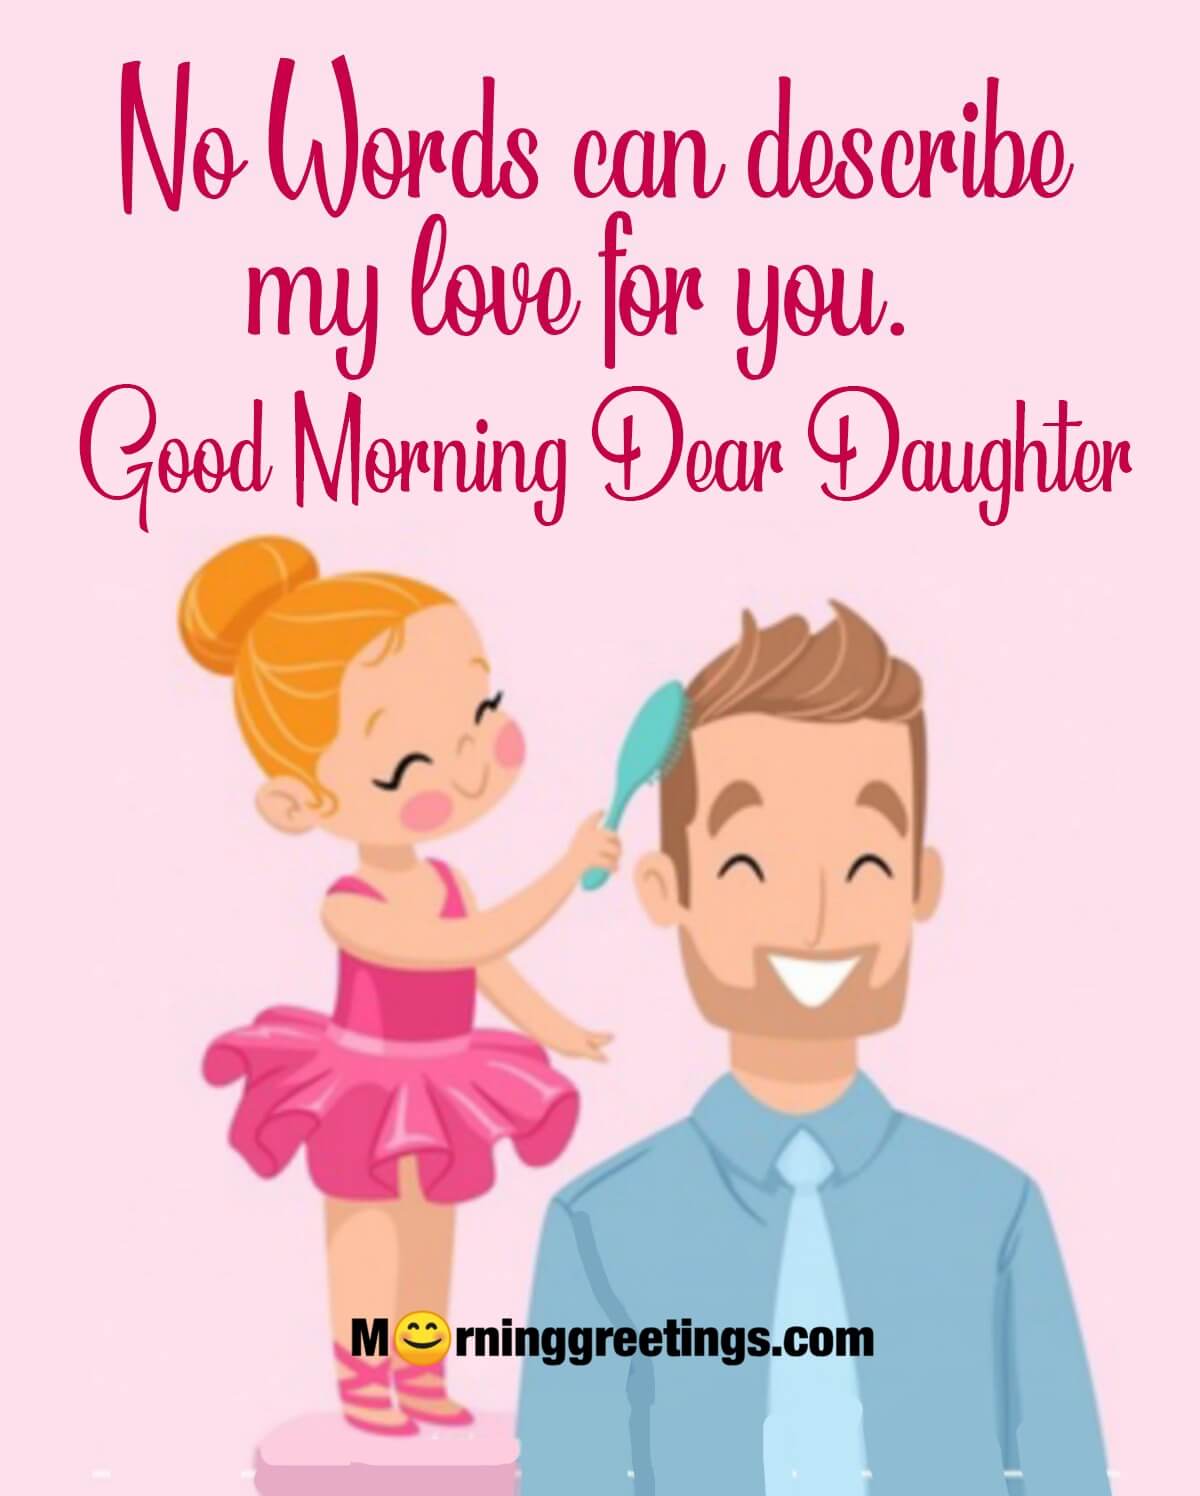 Good Morning Dear Daughter